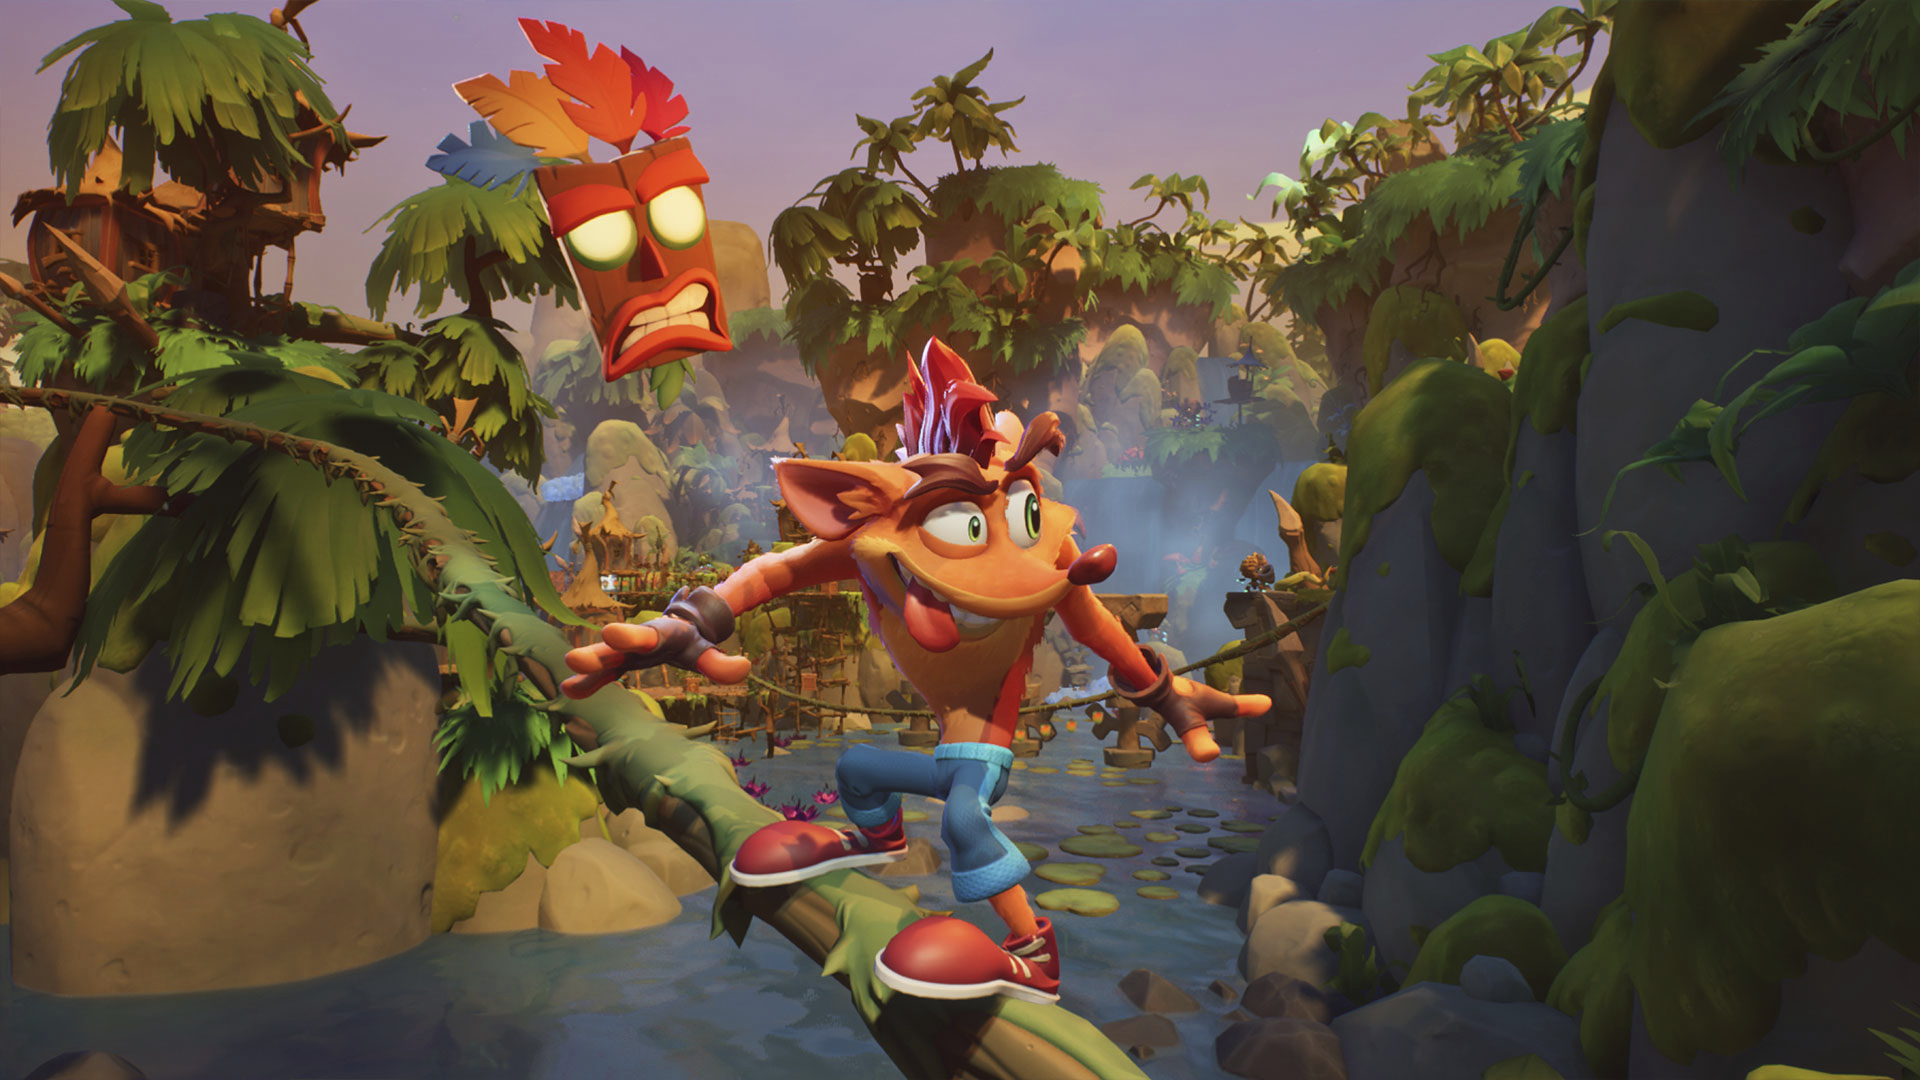 Crash Bandicoot 4 - It's About Time - captura de tela mostrando Crash deslizando em um tronco por um cenário de selva.